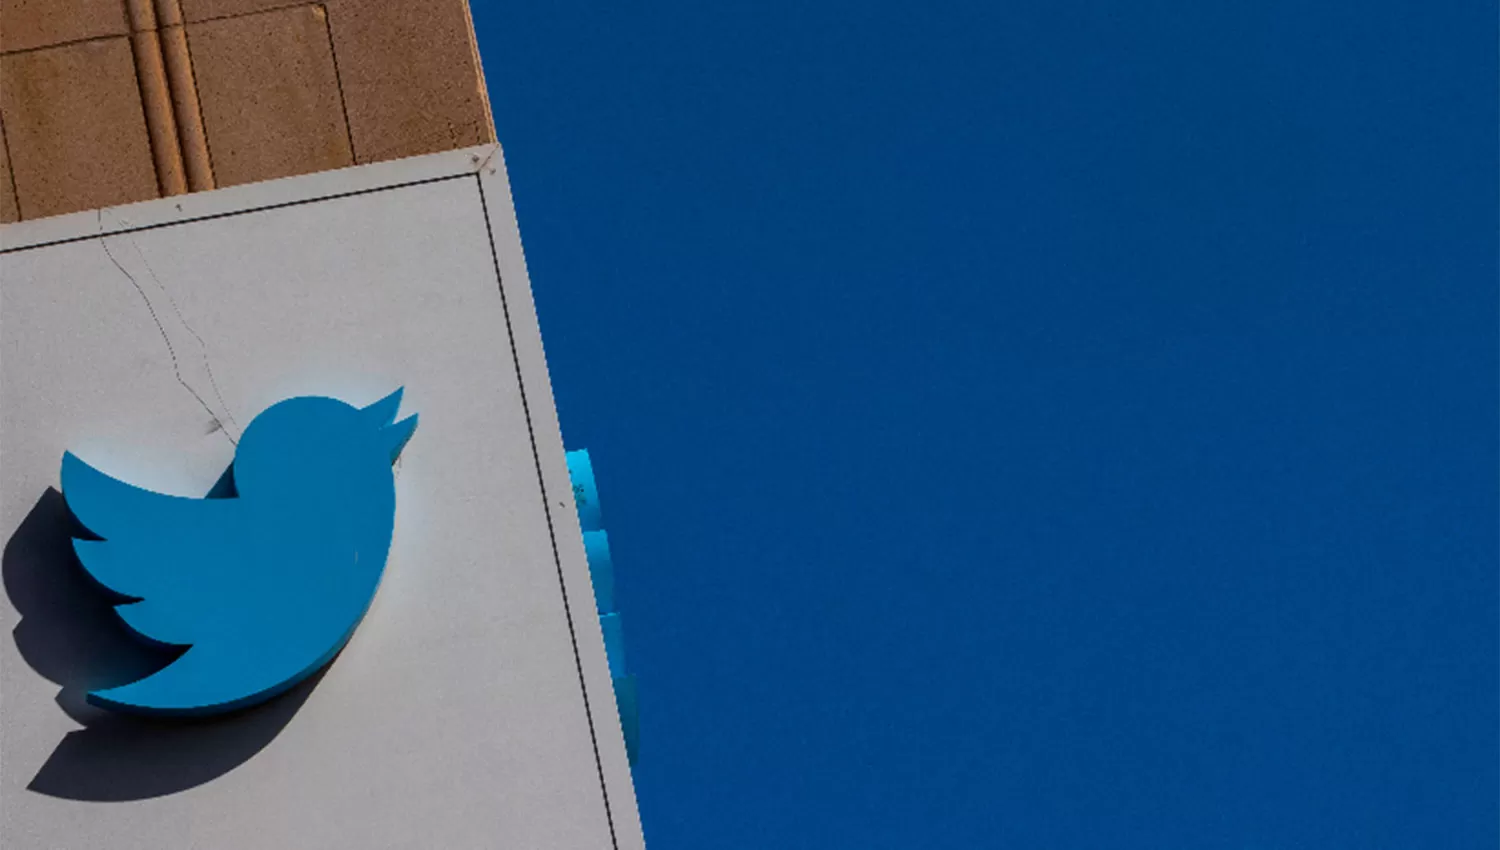 CRECIMIENTO. Los usuarios activos diarios de Twitter aumentaron hasta los 229 millones en el primer trimestre.